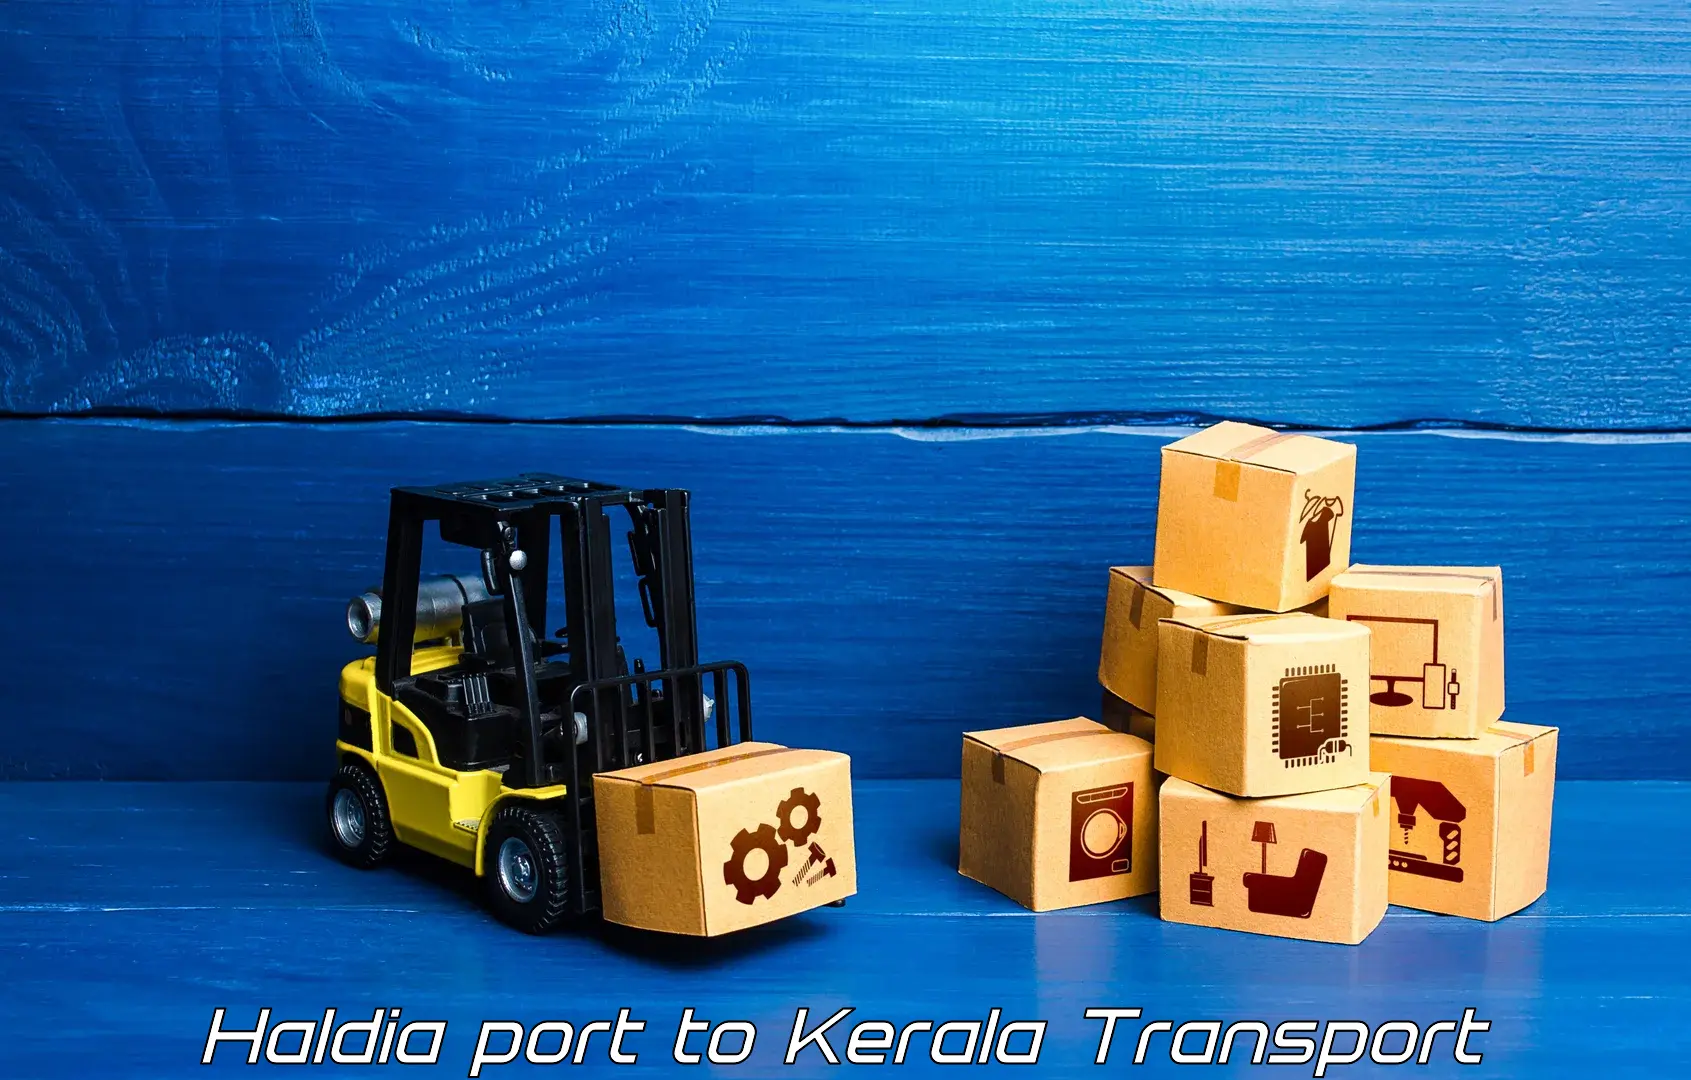 Interstate transport services Haldia port to Kalluvathukkal